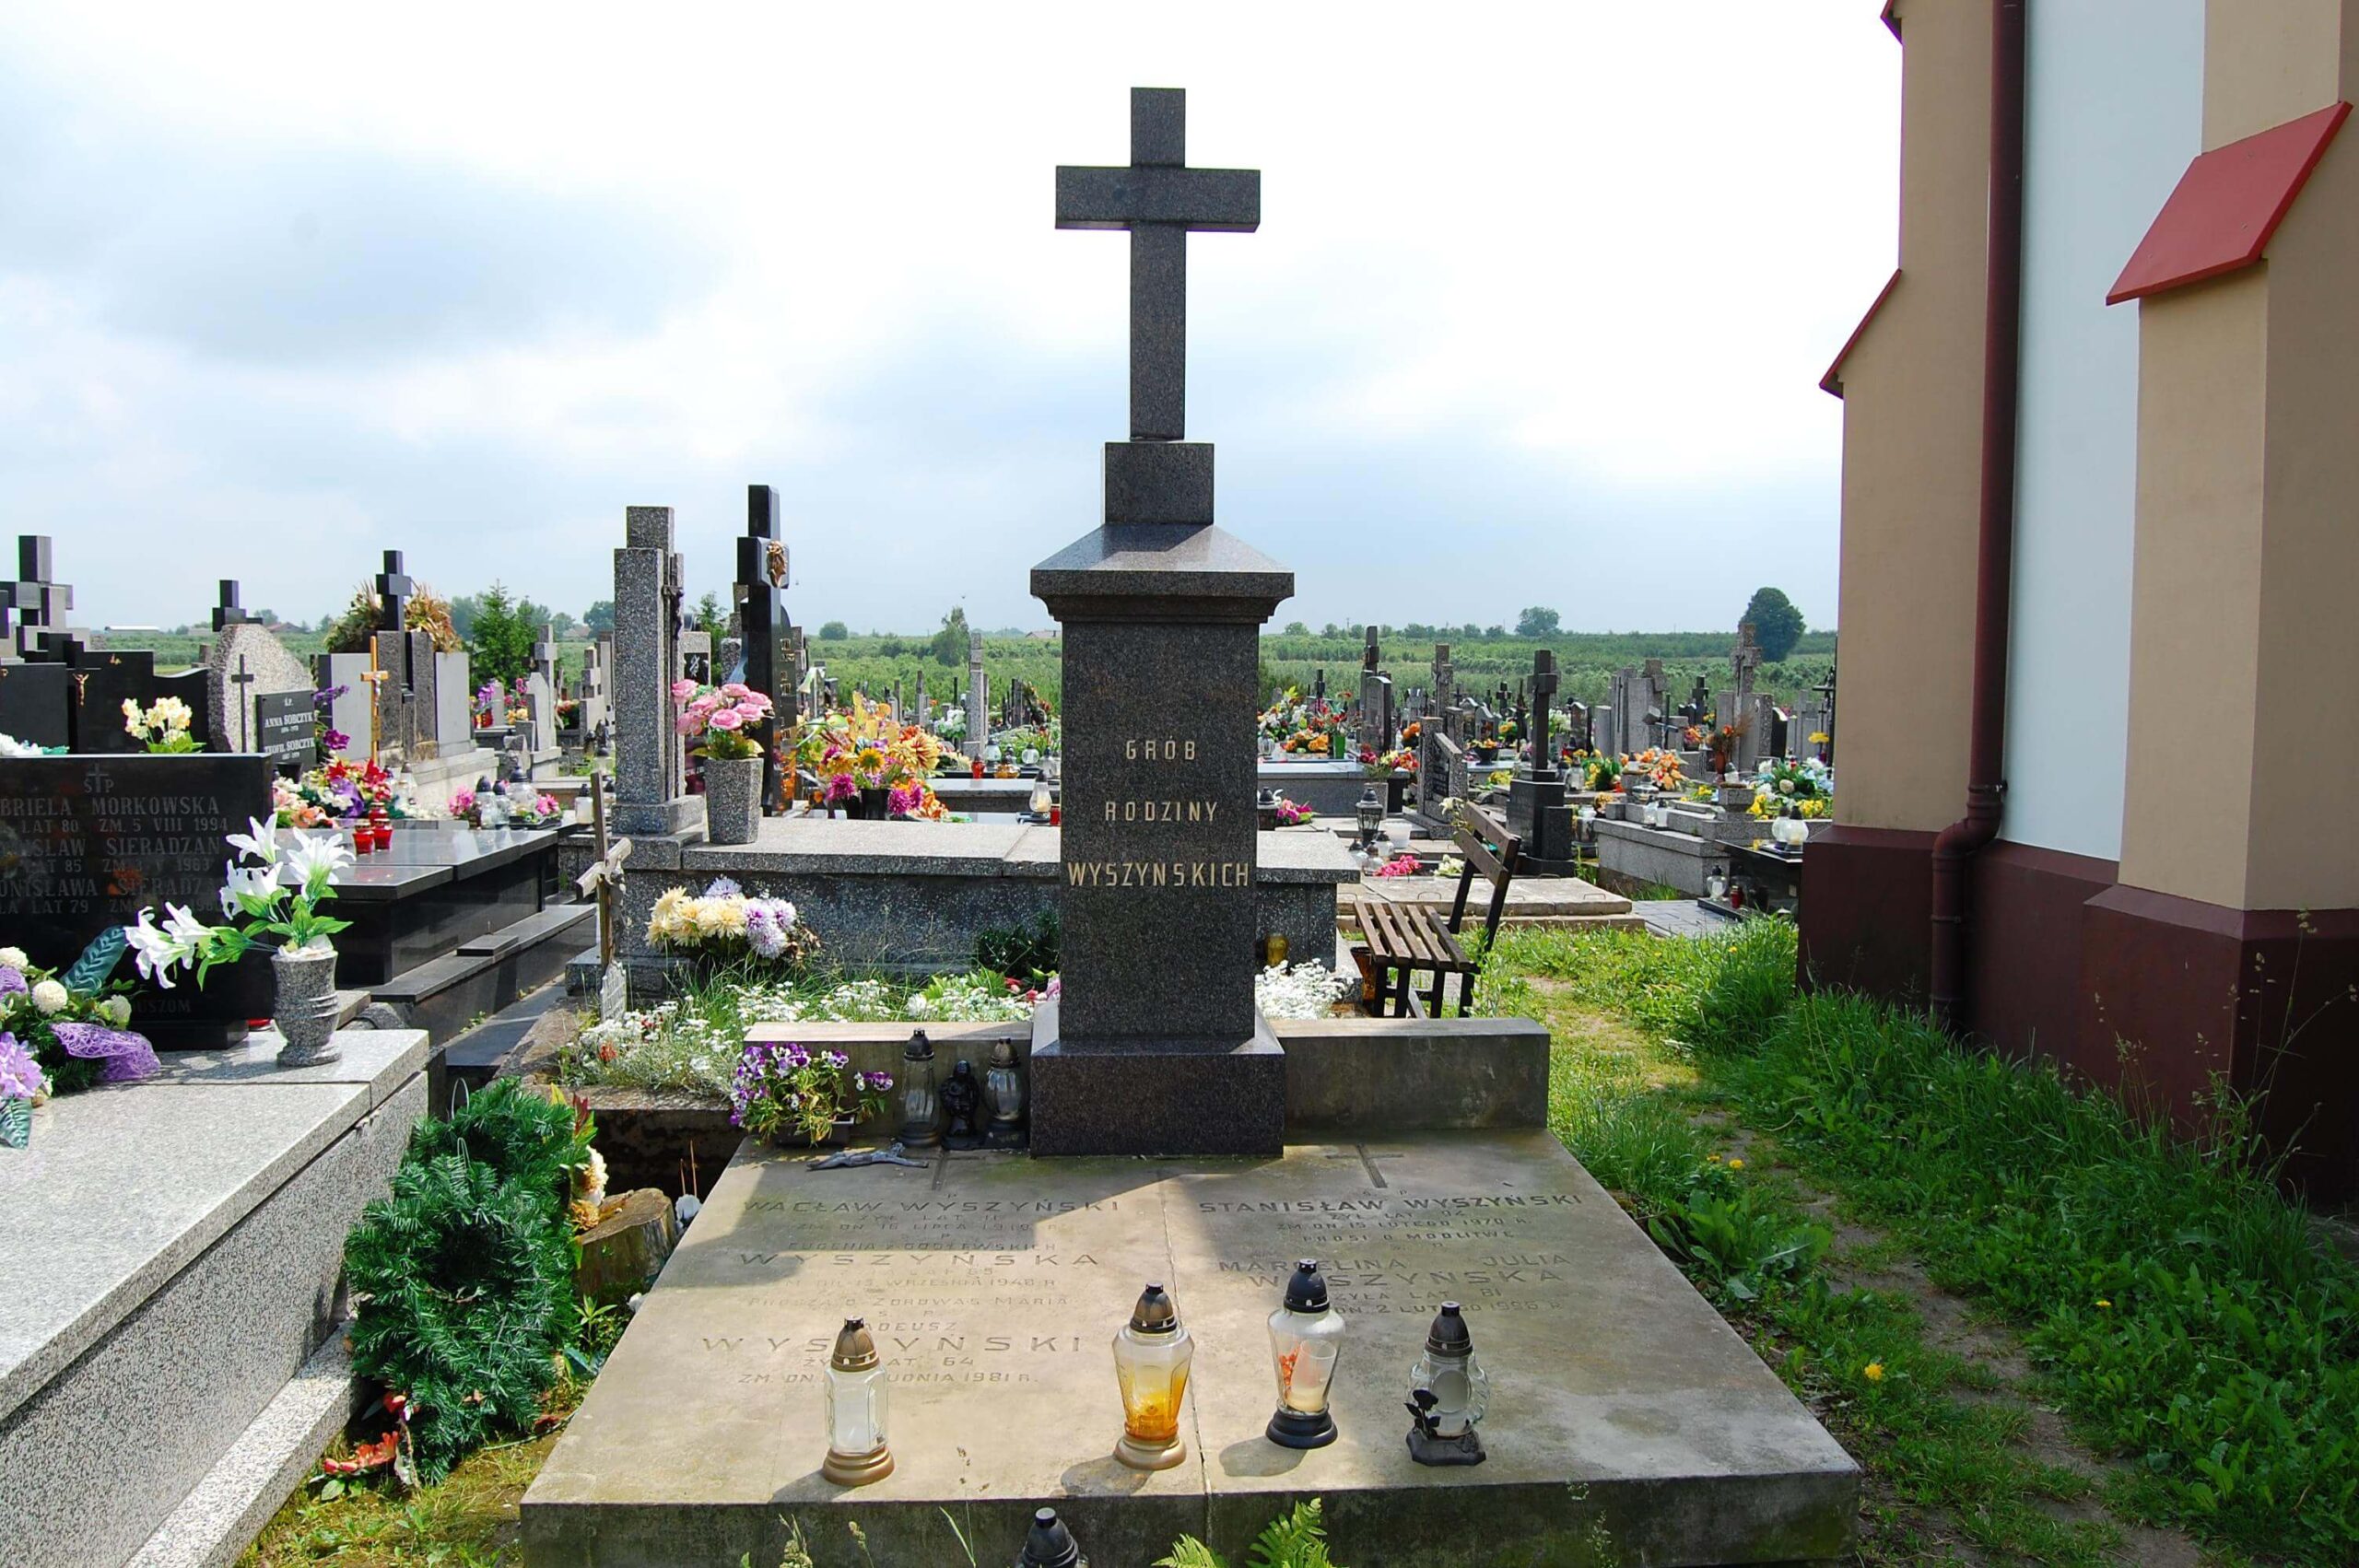 Cmentarz we Wrociszewie